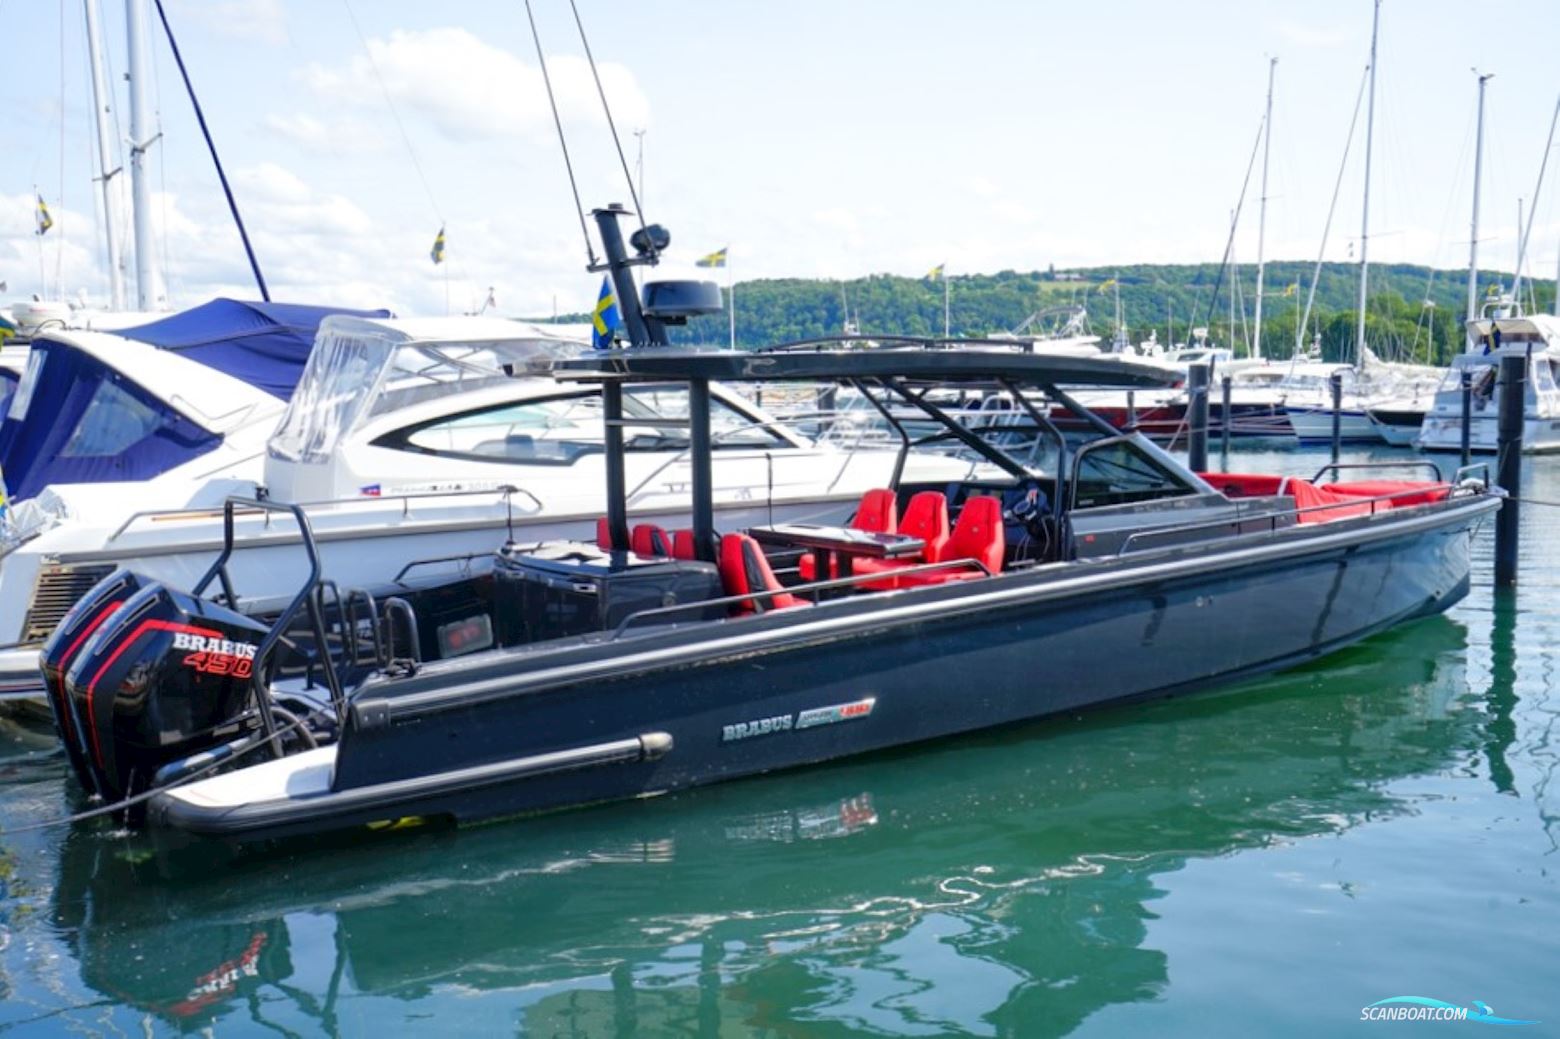 Brabus Shadow 900 Sun-Top Black Ops Power boat 2021, with Mercury Racing 450R Verado engine, Sweden